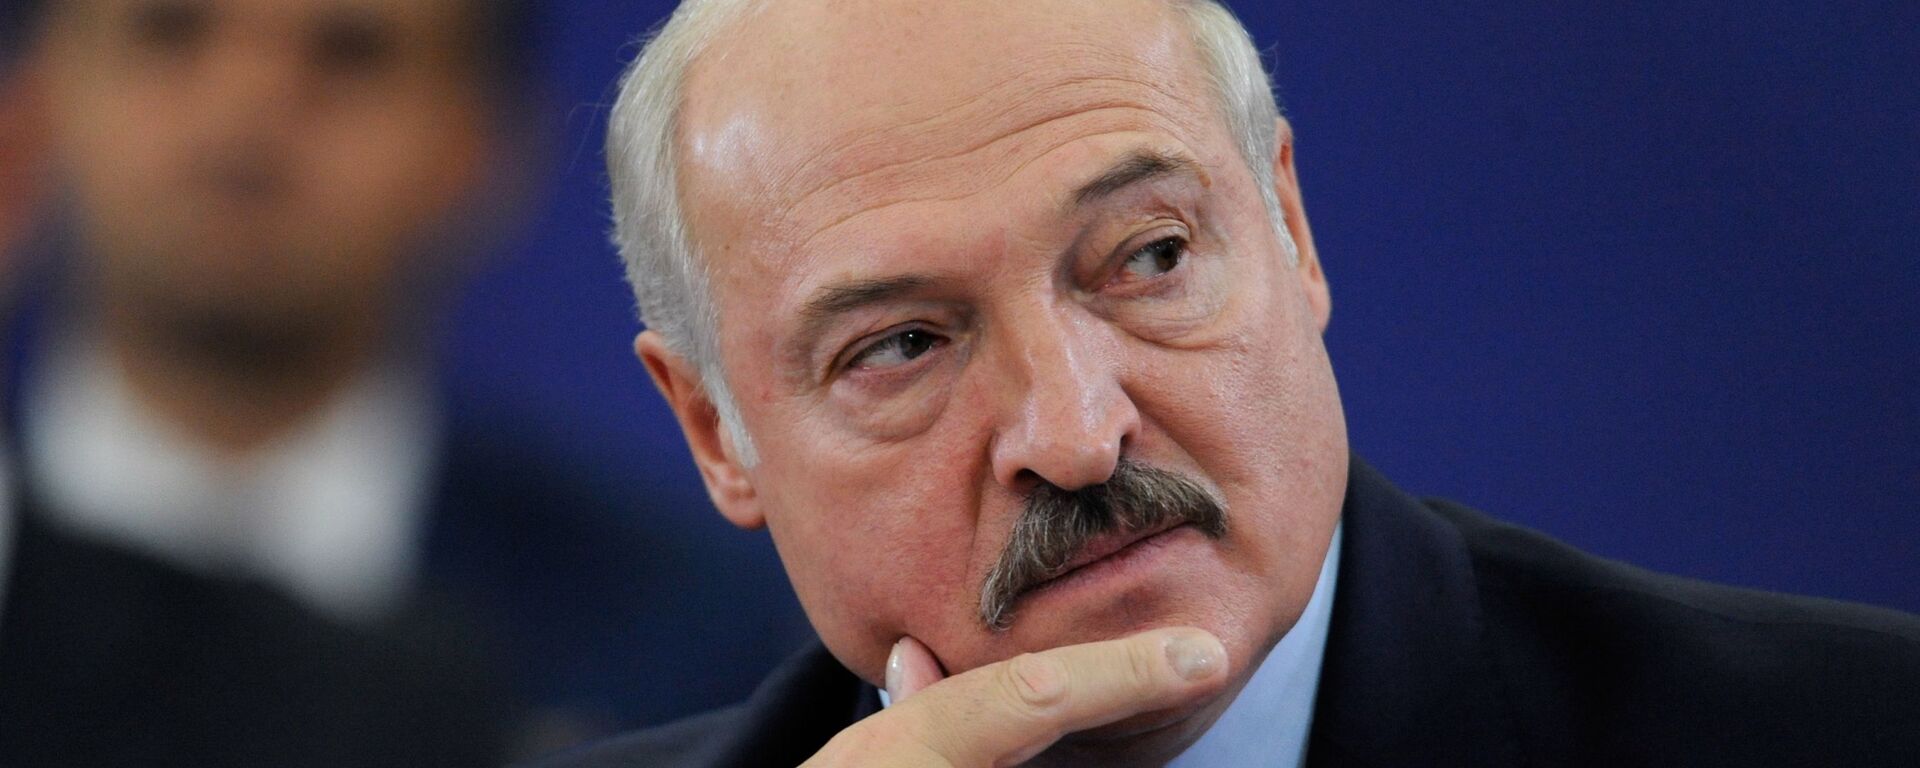 Alexandr Lukashenko, el presidente de Bielorrusia - Sputnik Mundo, 1920, 09.05.2021